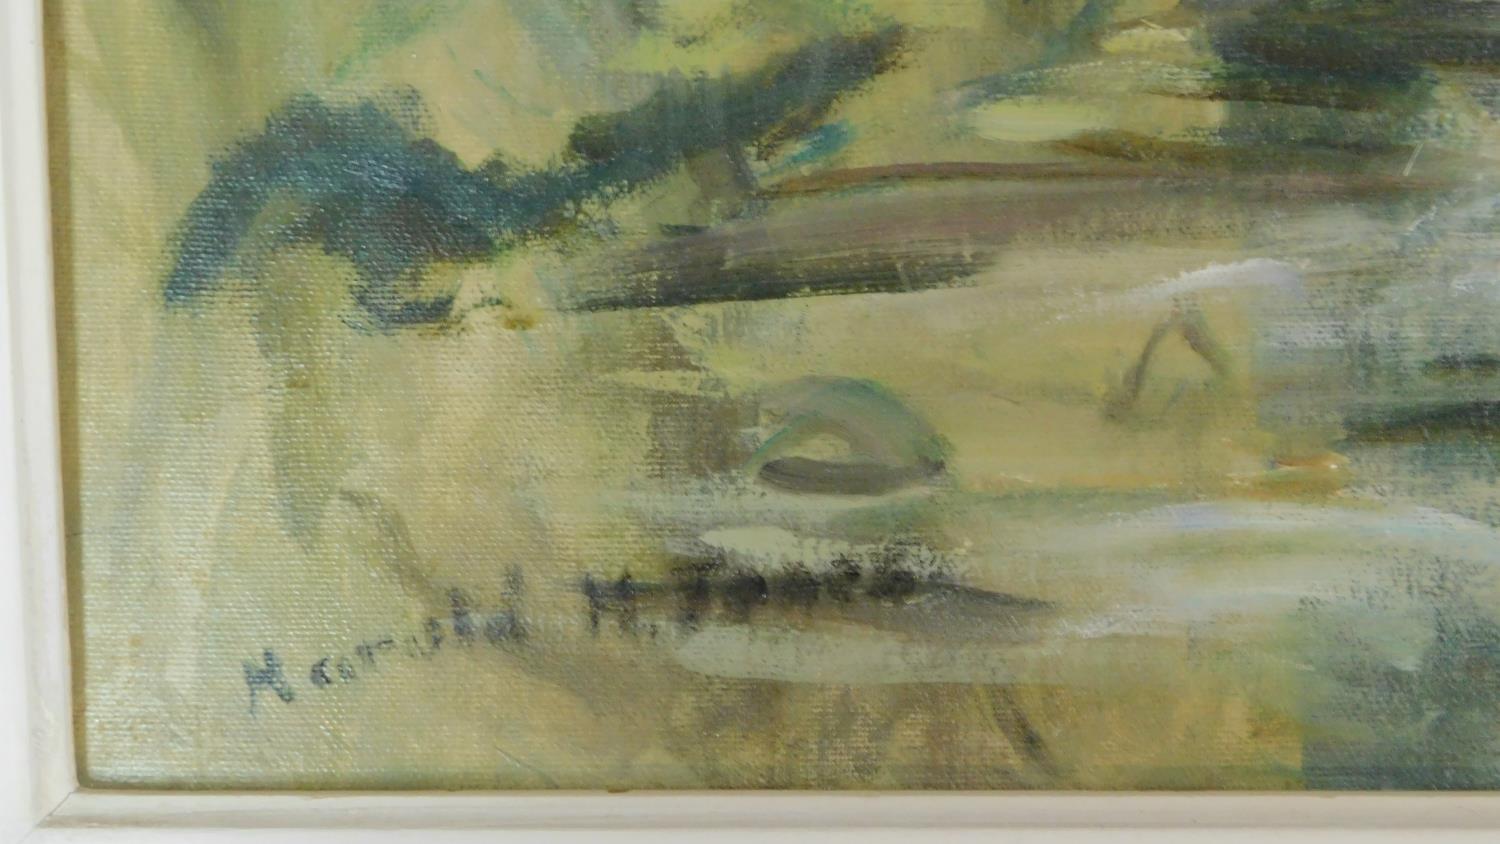 Harold Harris Jones (1908-1991) A framed oil on board, angler in a river landscape, signed. 74x64cm - Image 4 of 4